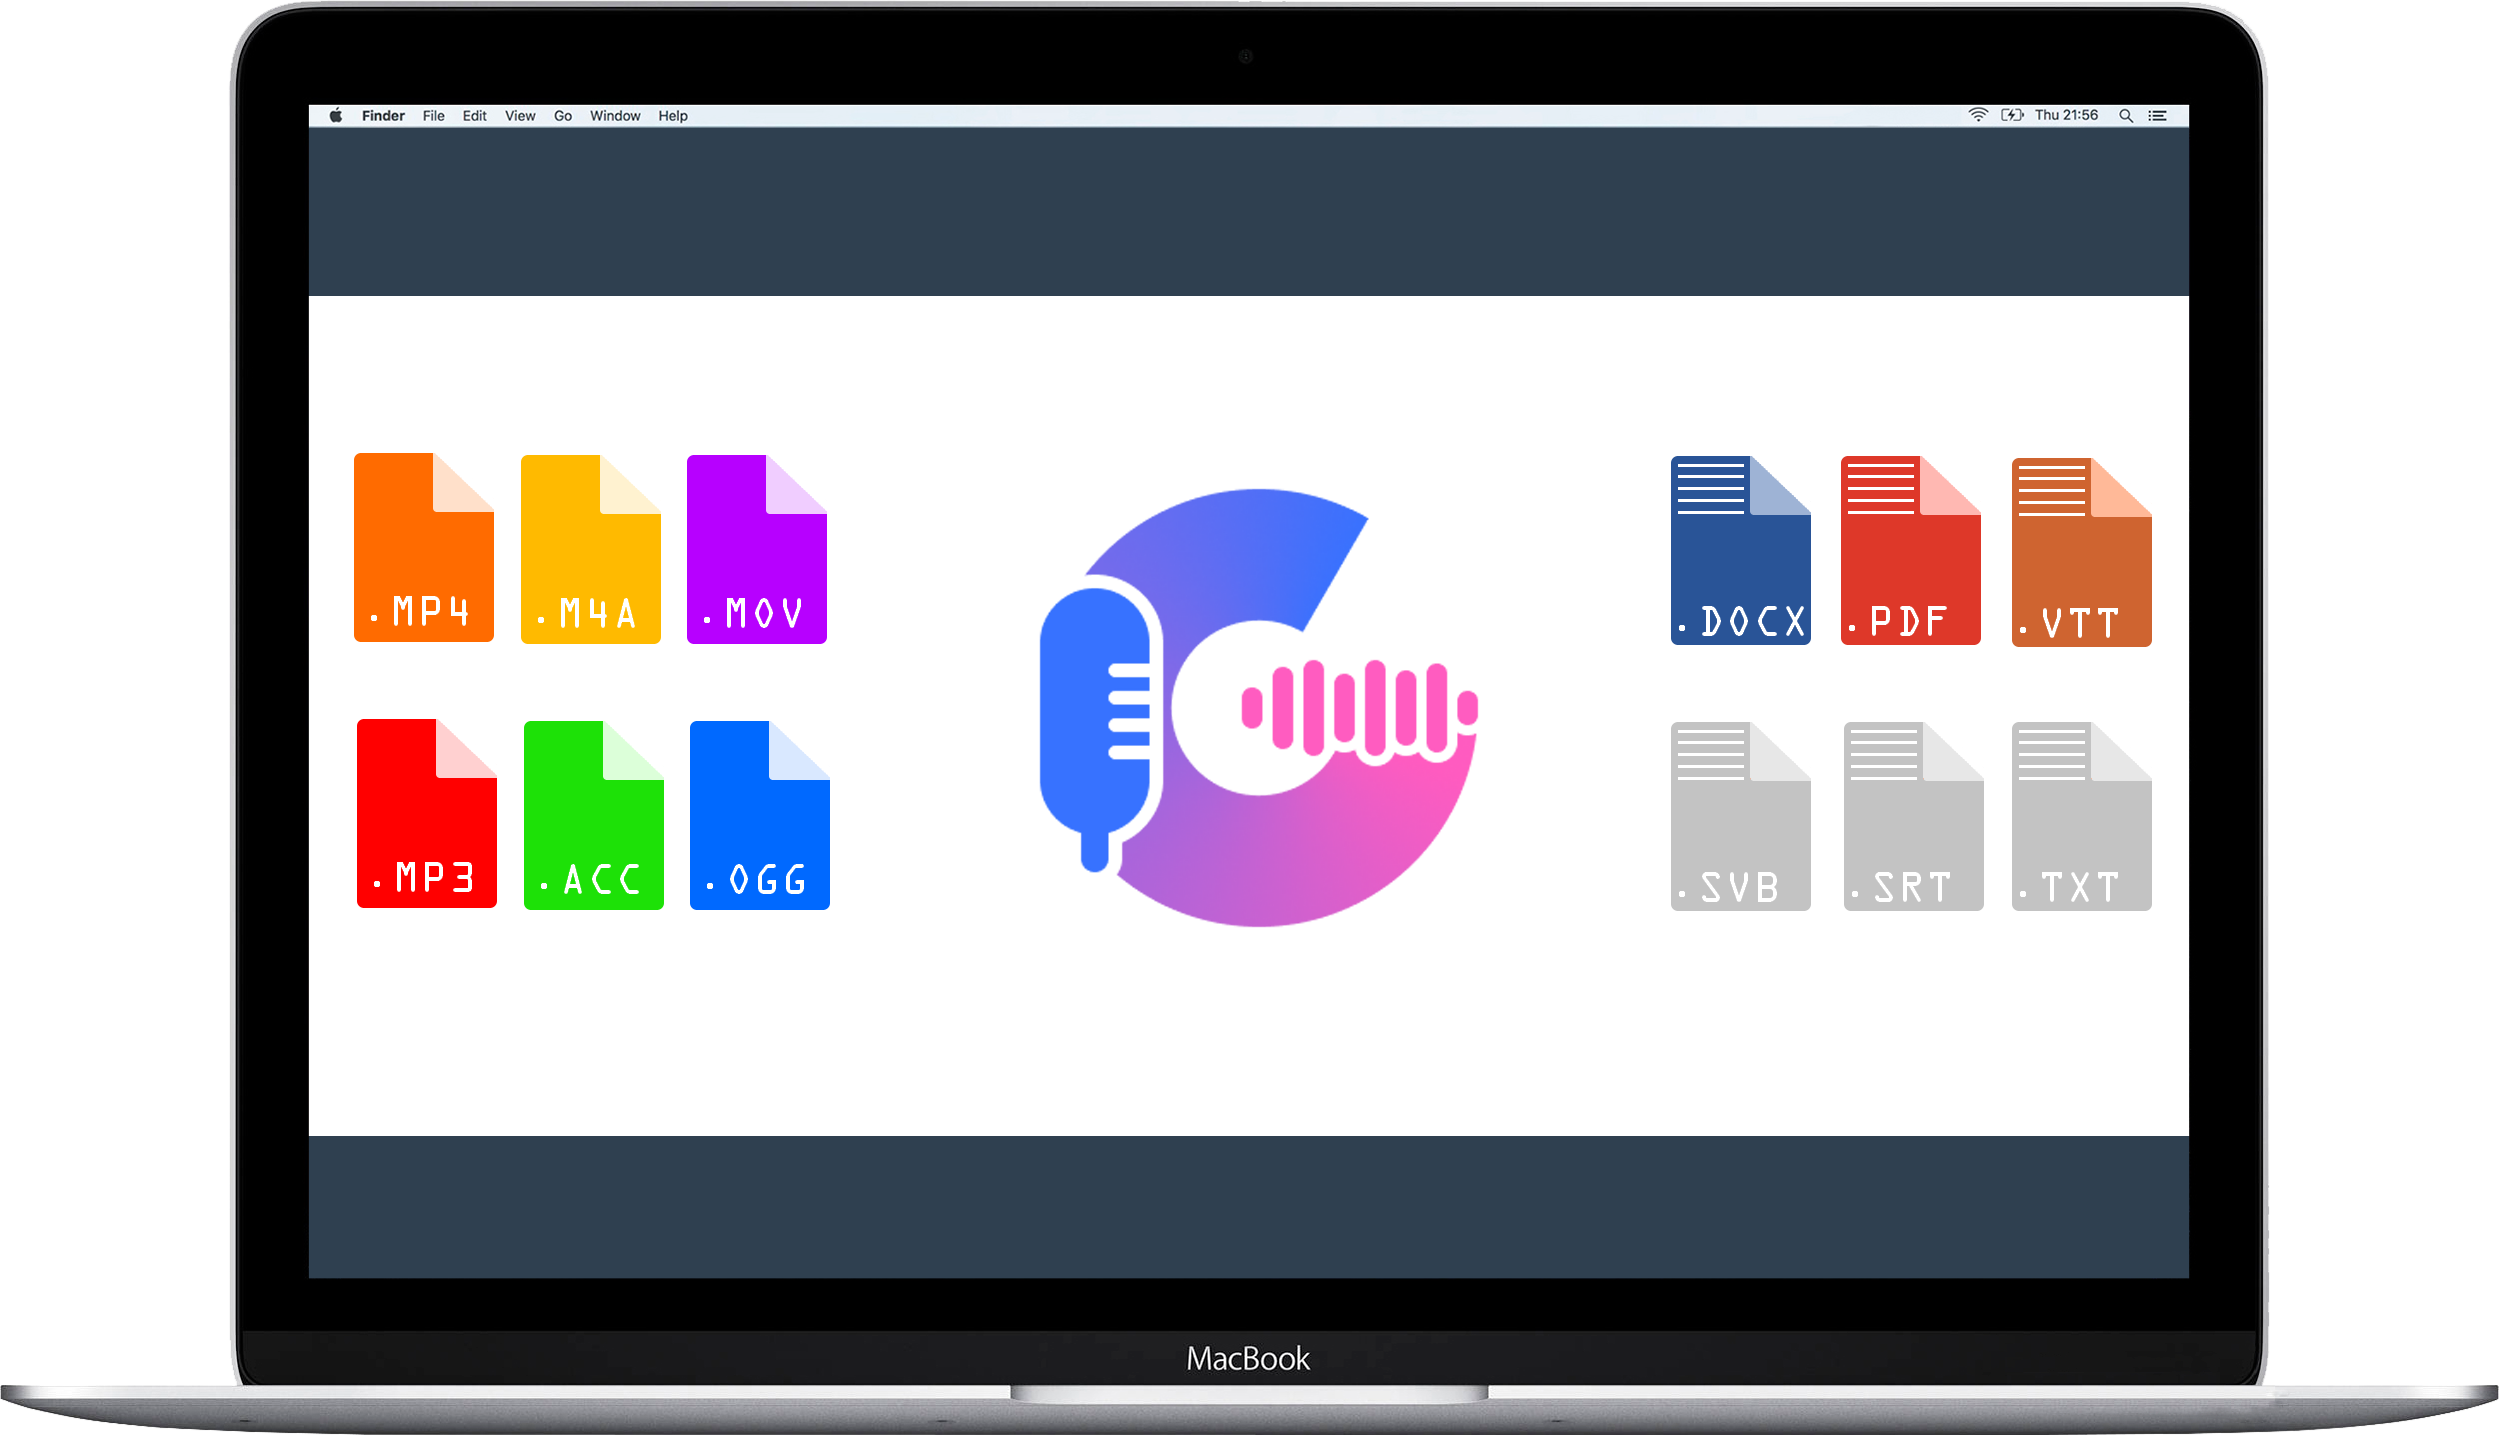 Gglot 전사 서비스 대시보드를 보여주는 Mac Studio 및 Studio 디스플레이.